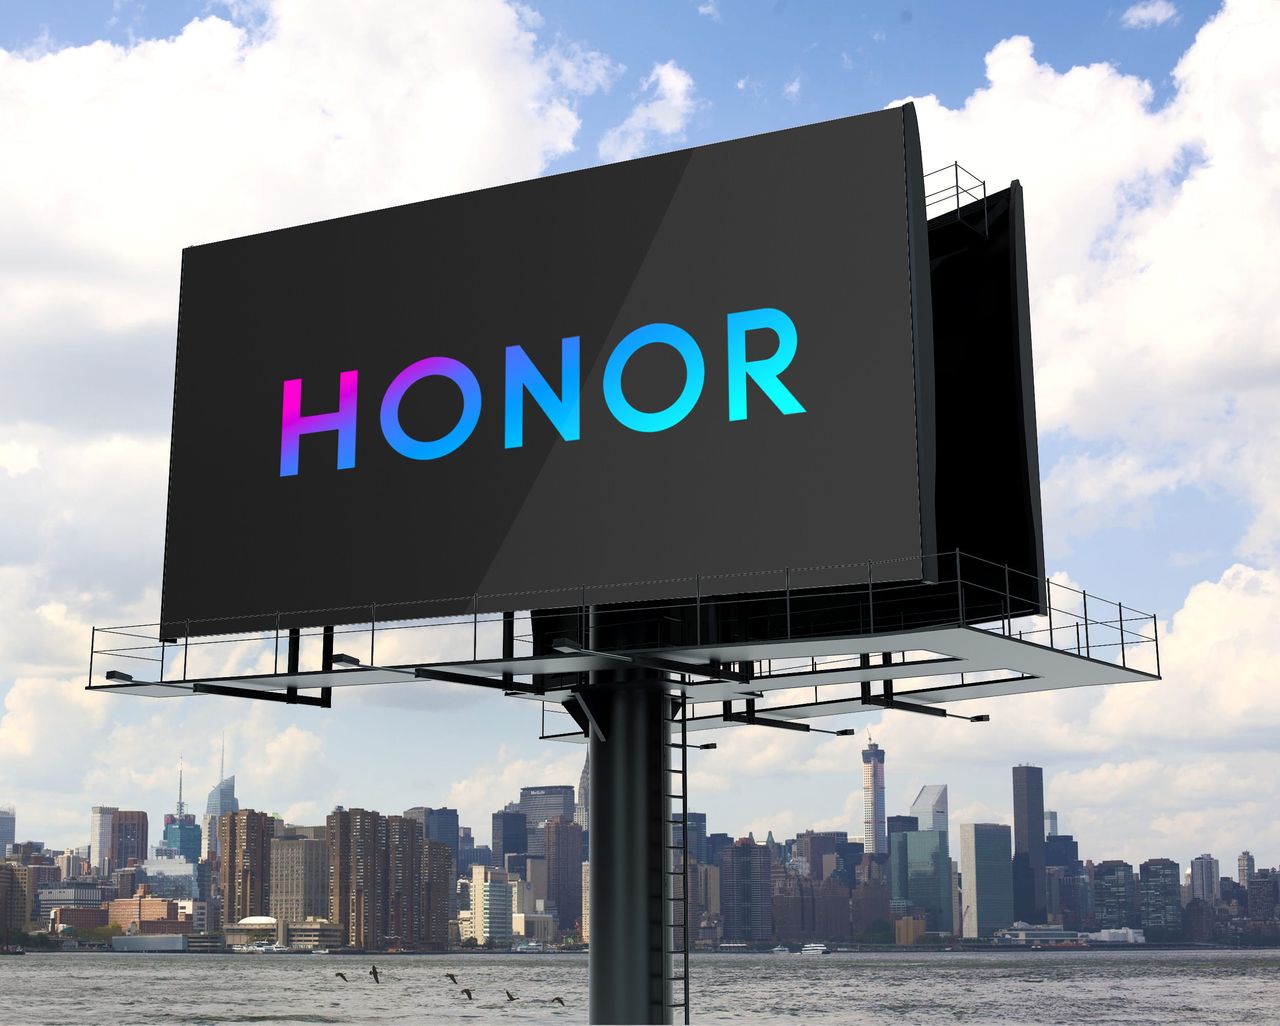 Sprzedaż Honora przez Huaweia jest już ponoć pewna. W grę wchodzi 15 miliardów dolarów